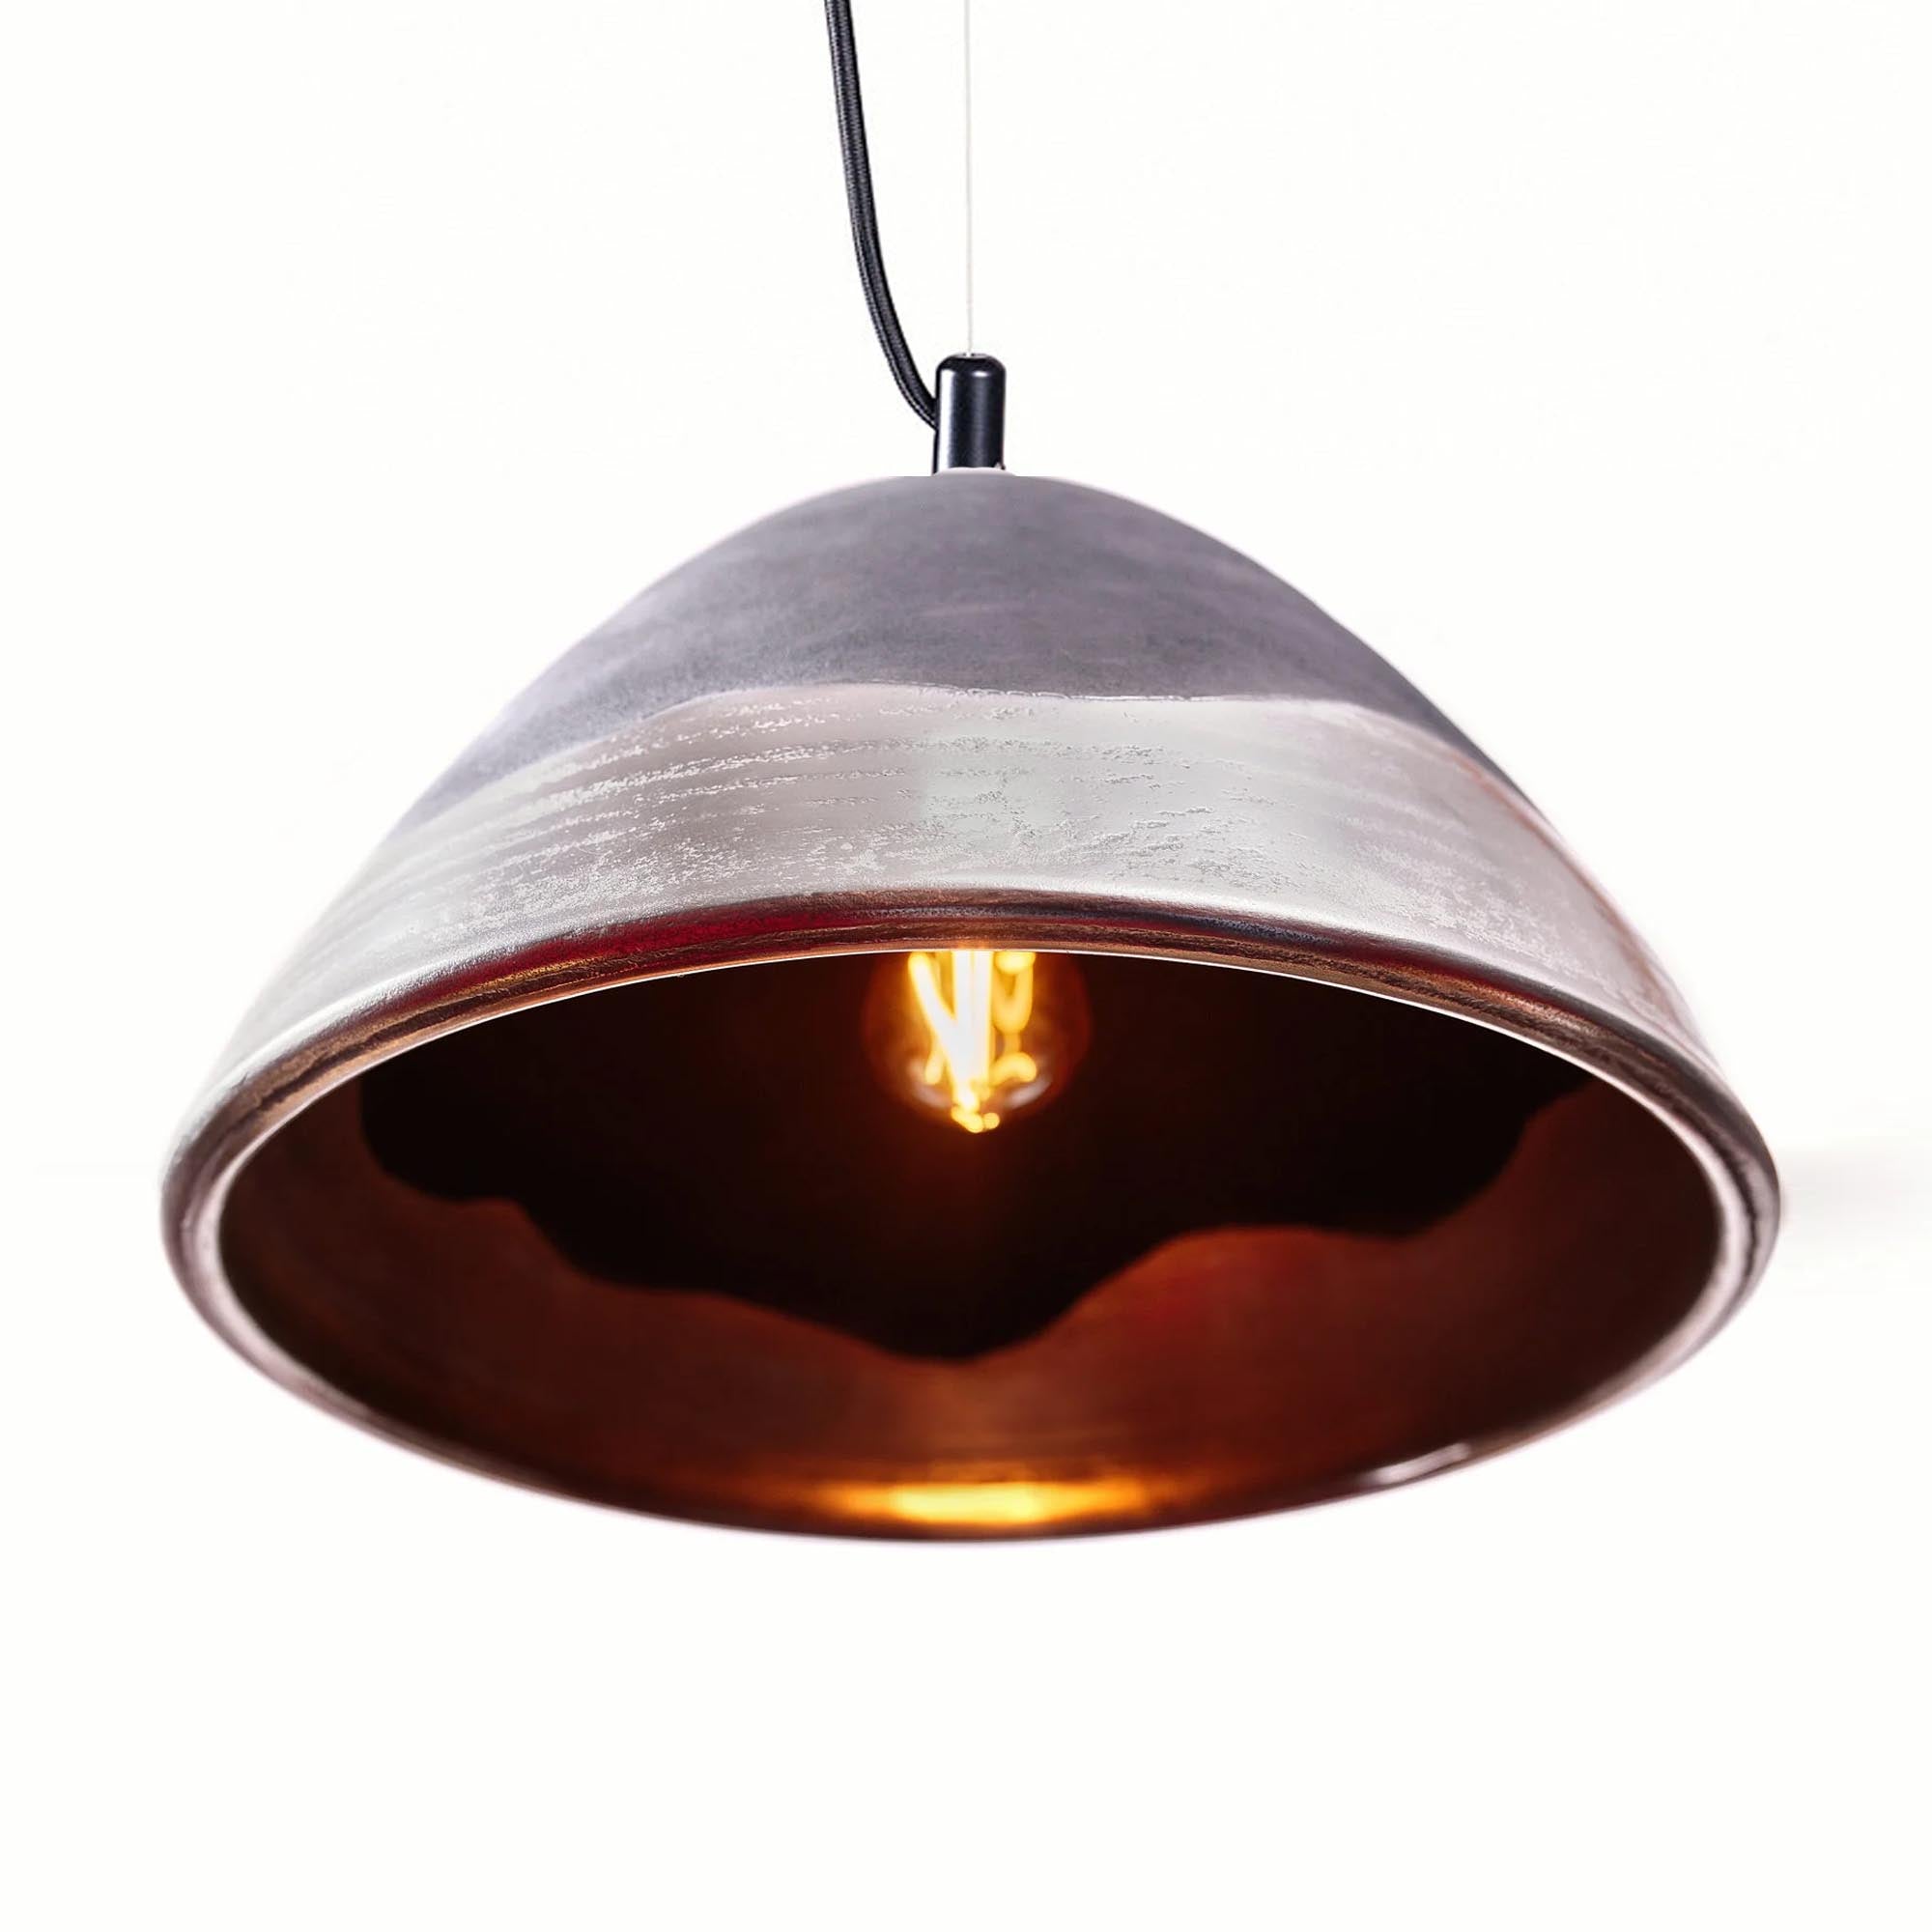 Подвесной светильник 39 х 29 см, керамический, черный с серебряным